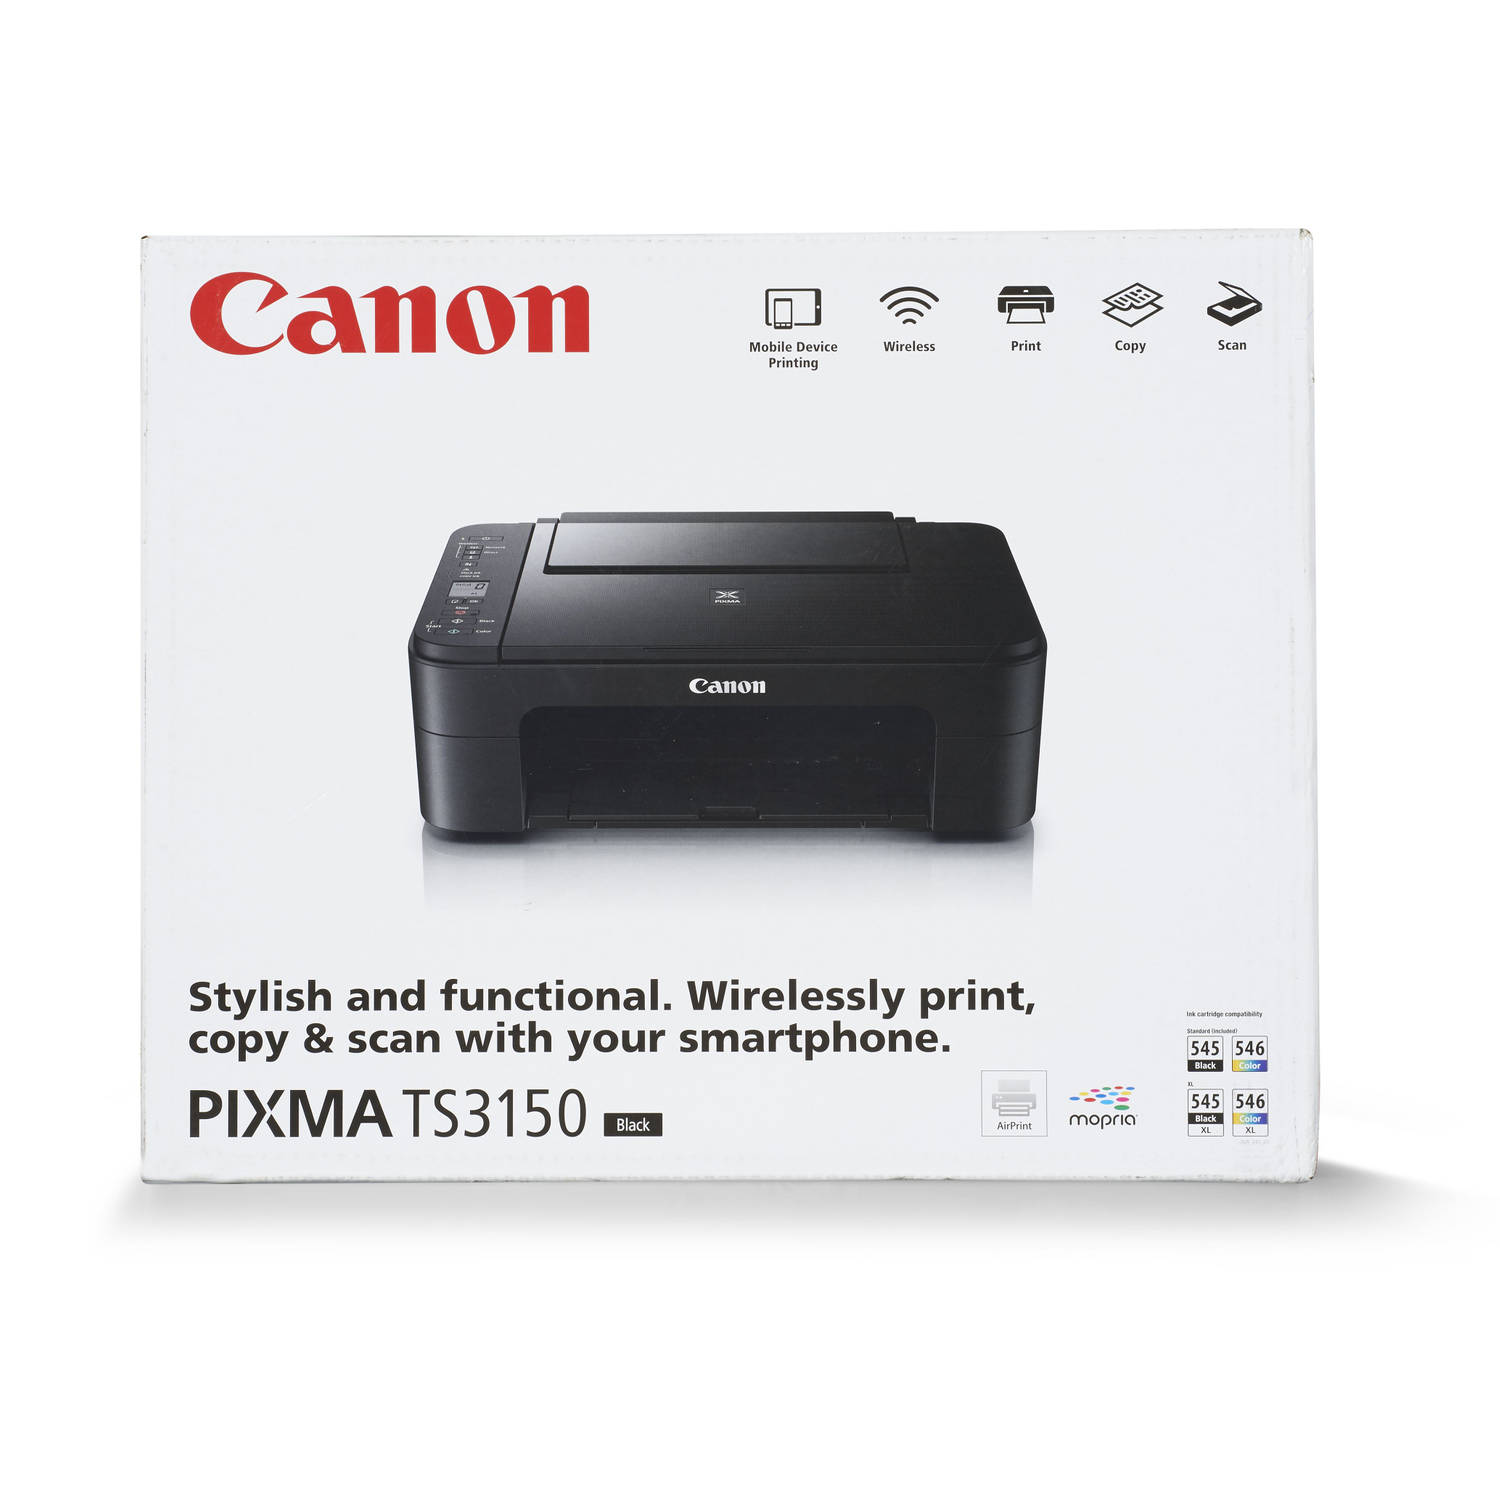 Onbemand voeden ingenieur Canon printer Pixma TS3150 | Blokker